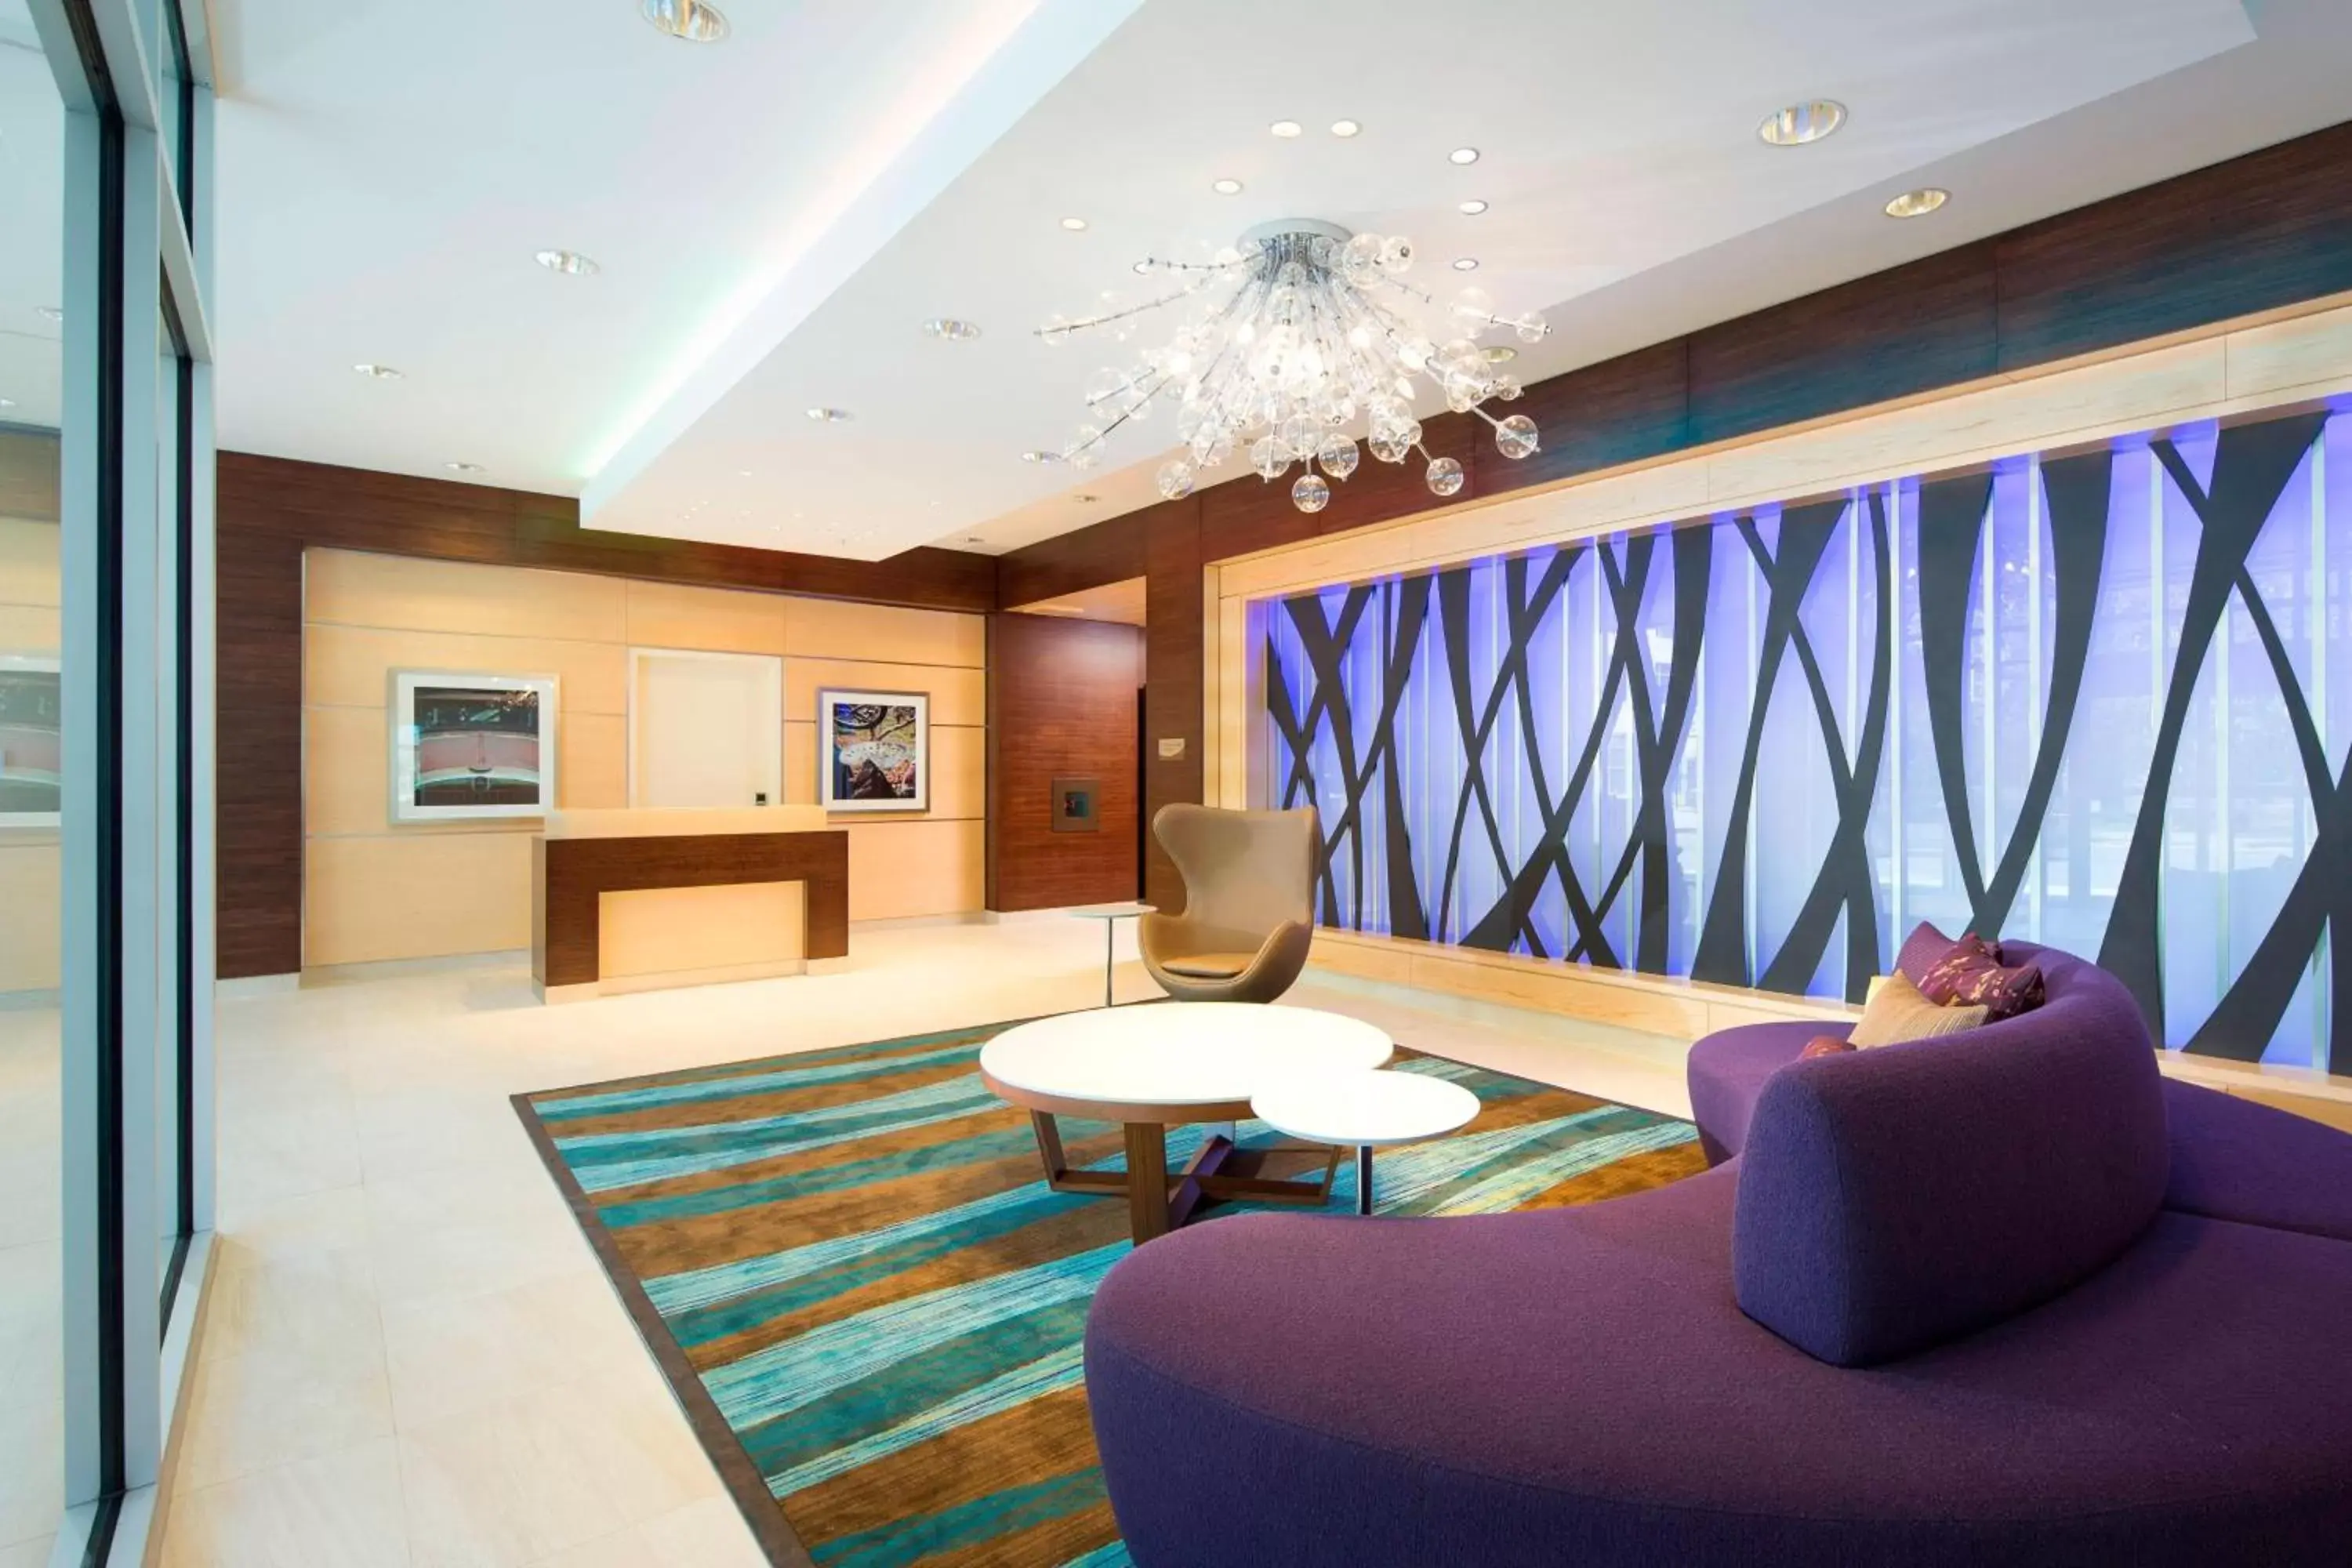 Lobby or reception, Lobby/Reception in Fairfield Inn & Suites by Marriott Calgary Downtown